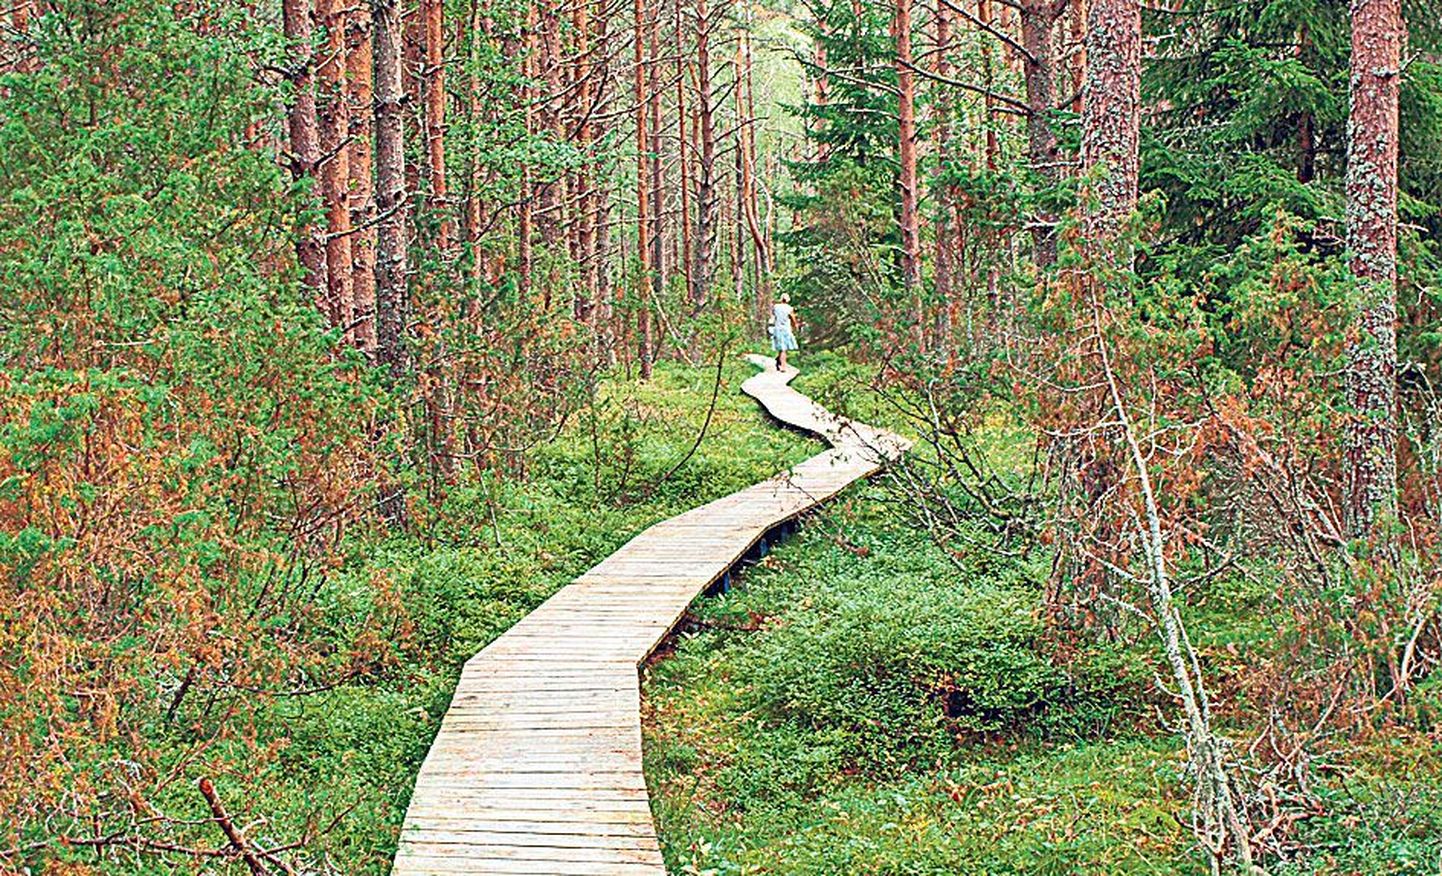 Kärdla-Tõrvanina matkarada: veidi rohkem kui kaks kilomeetrit metsaalusest 5,4 km pikkusest teekonnast kulgeb heas seisukorras ja piisavalt laial laudteel. Raja äärde jääb ka kaks väikest vaateplatvormi.